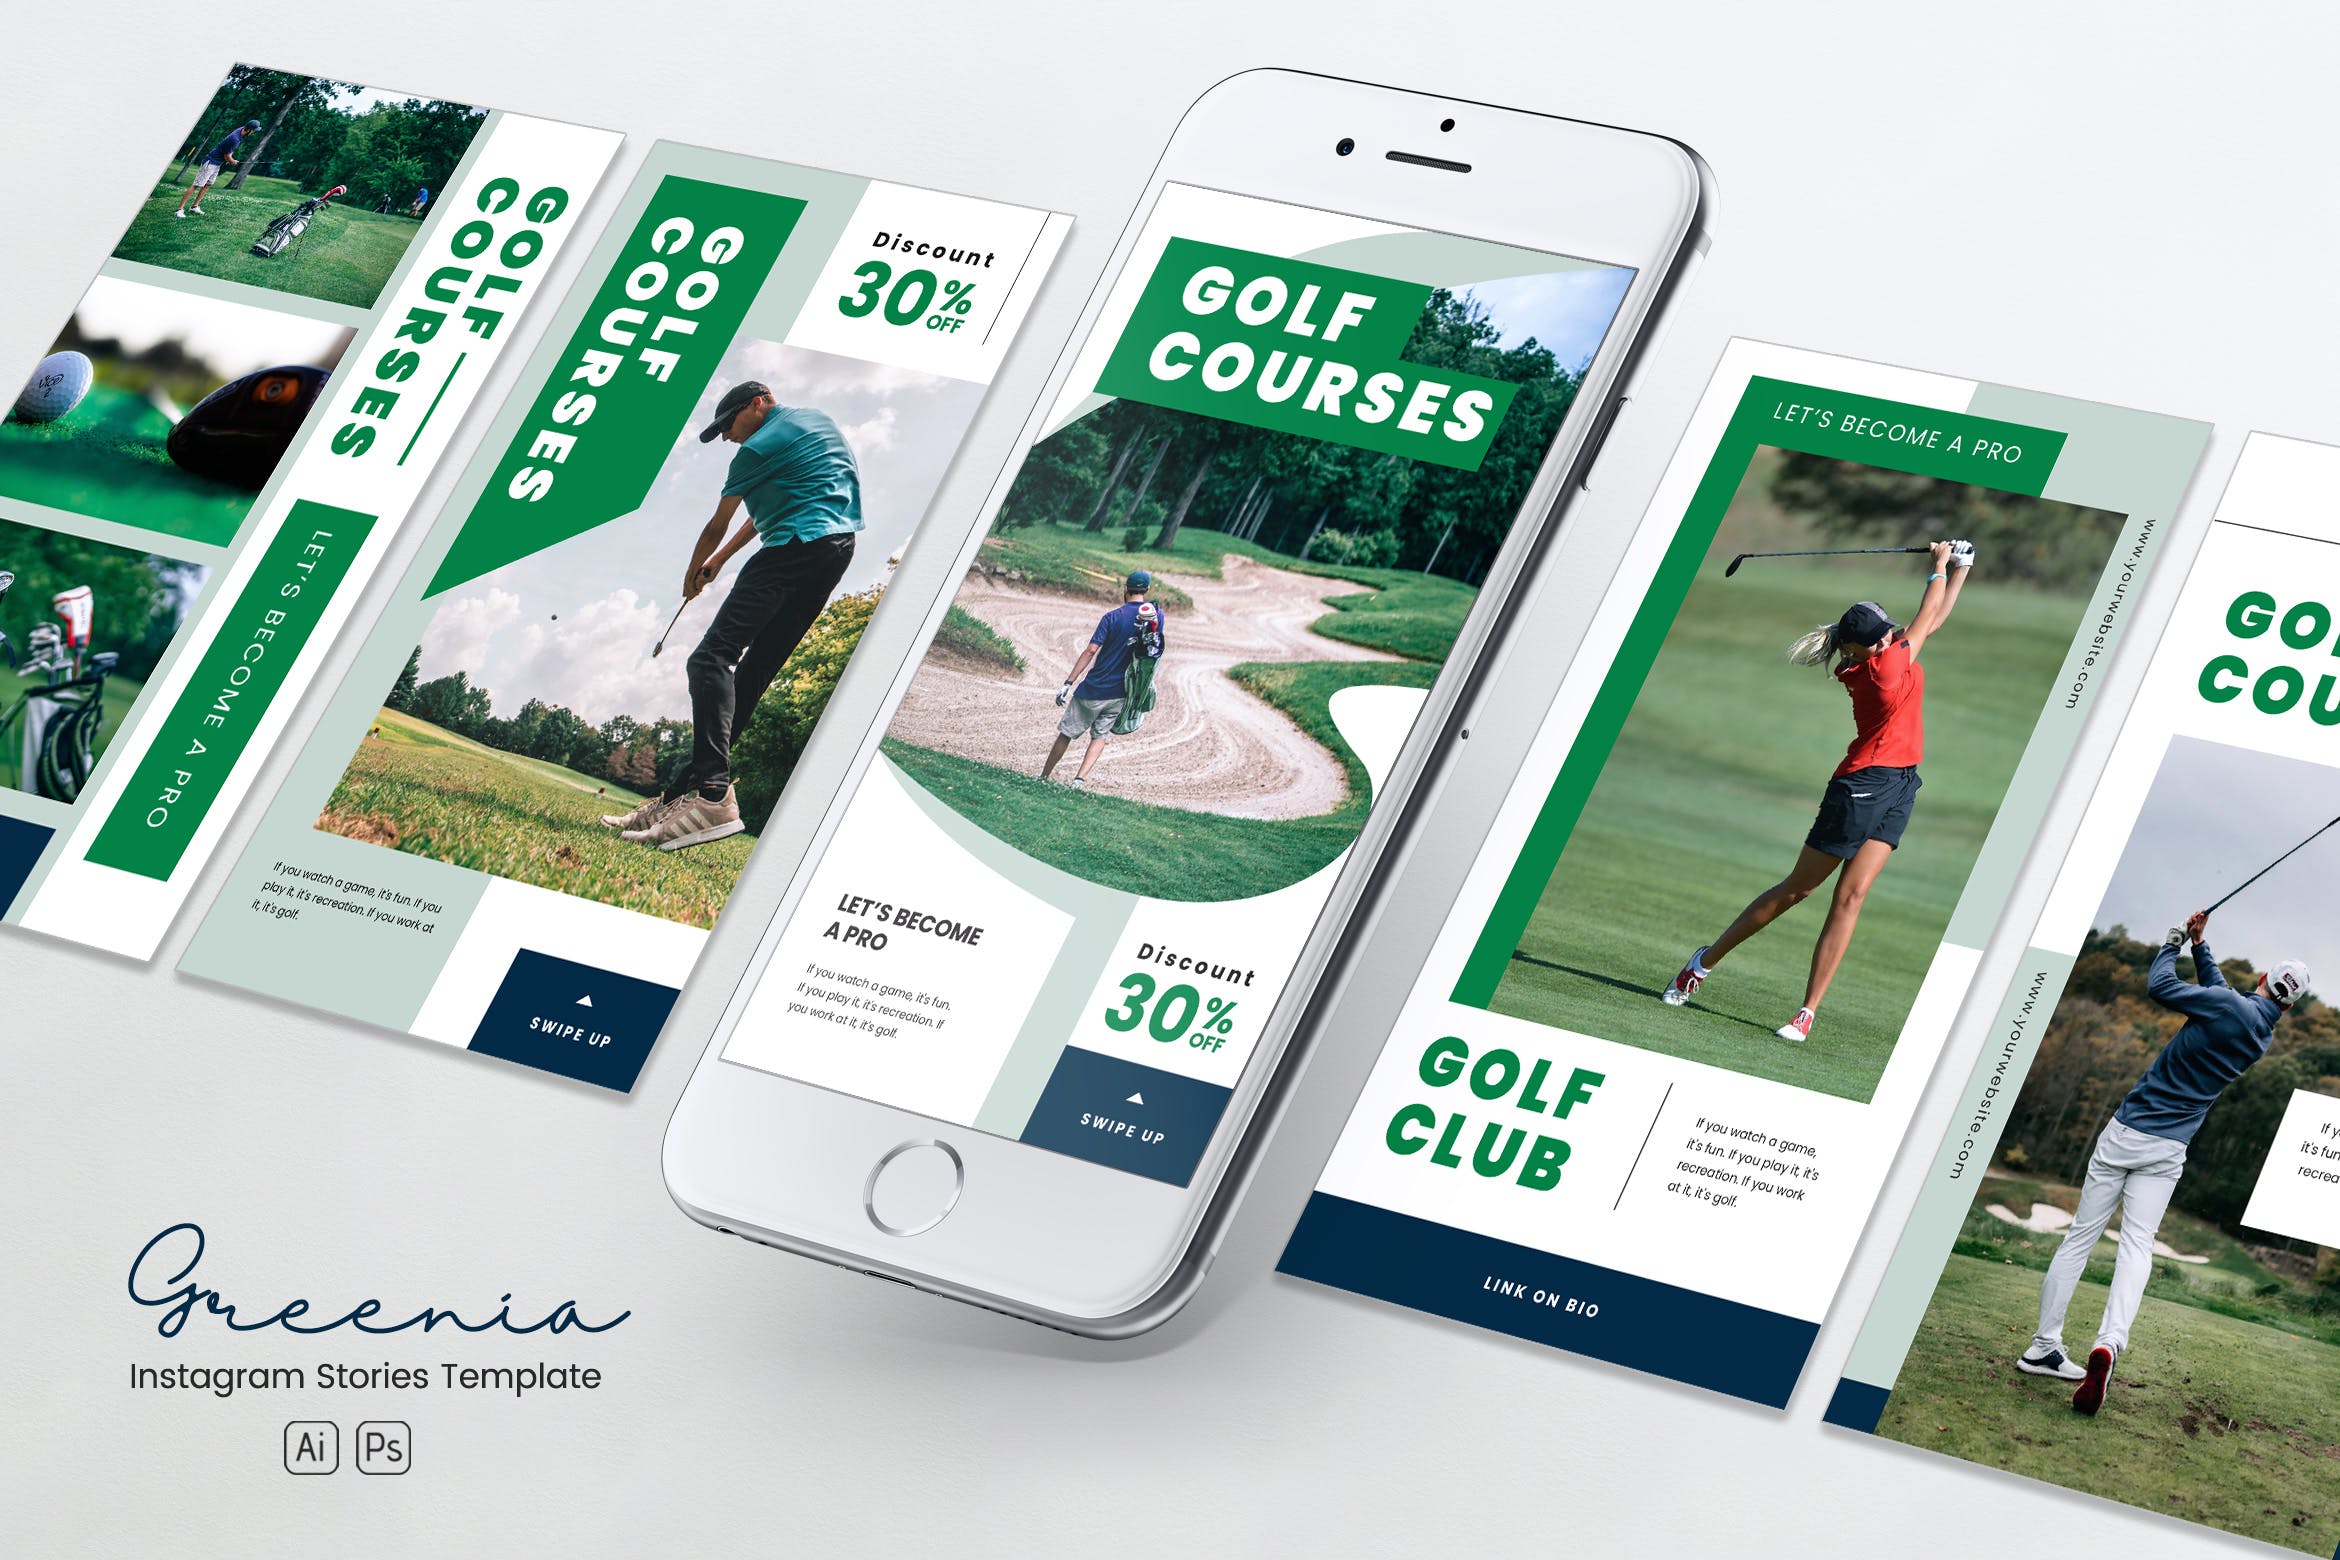 高尔夫球场/俱乐部Instagram社交媒体品牌故事推广PSD&AI模板素材库精选 Golf Competition Instagram Stories PSD & AI插图